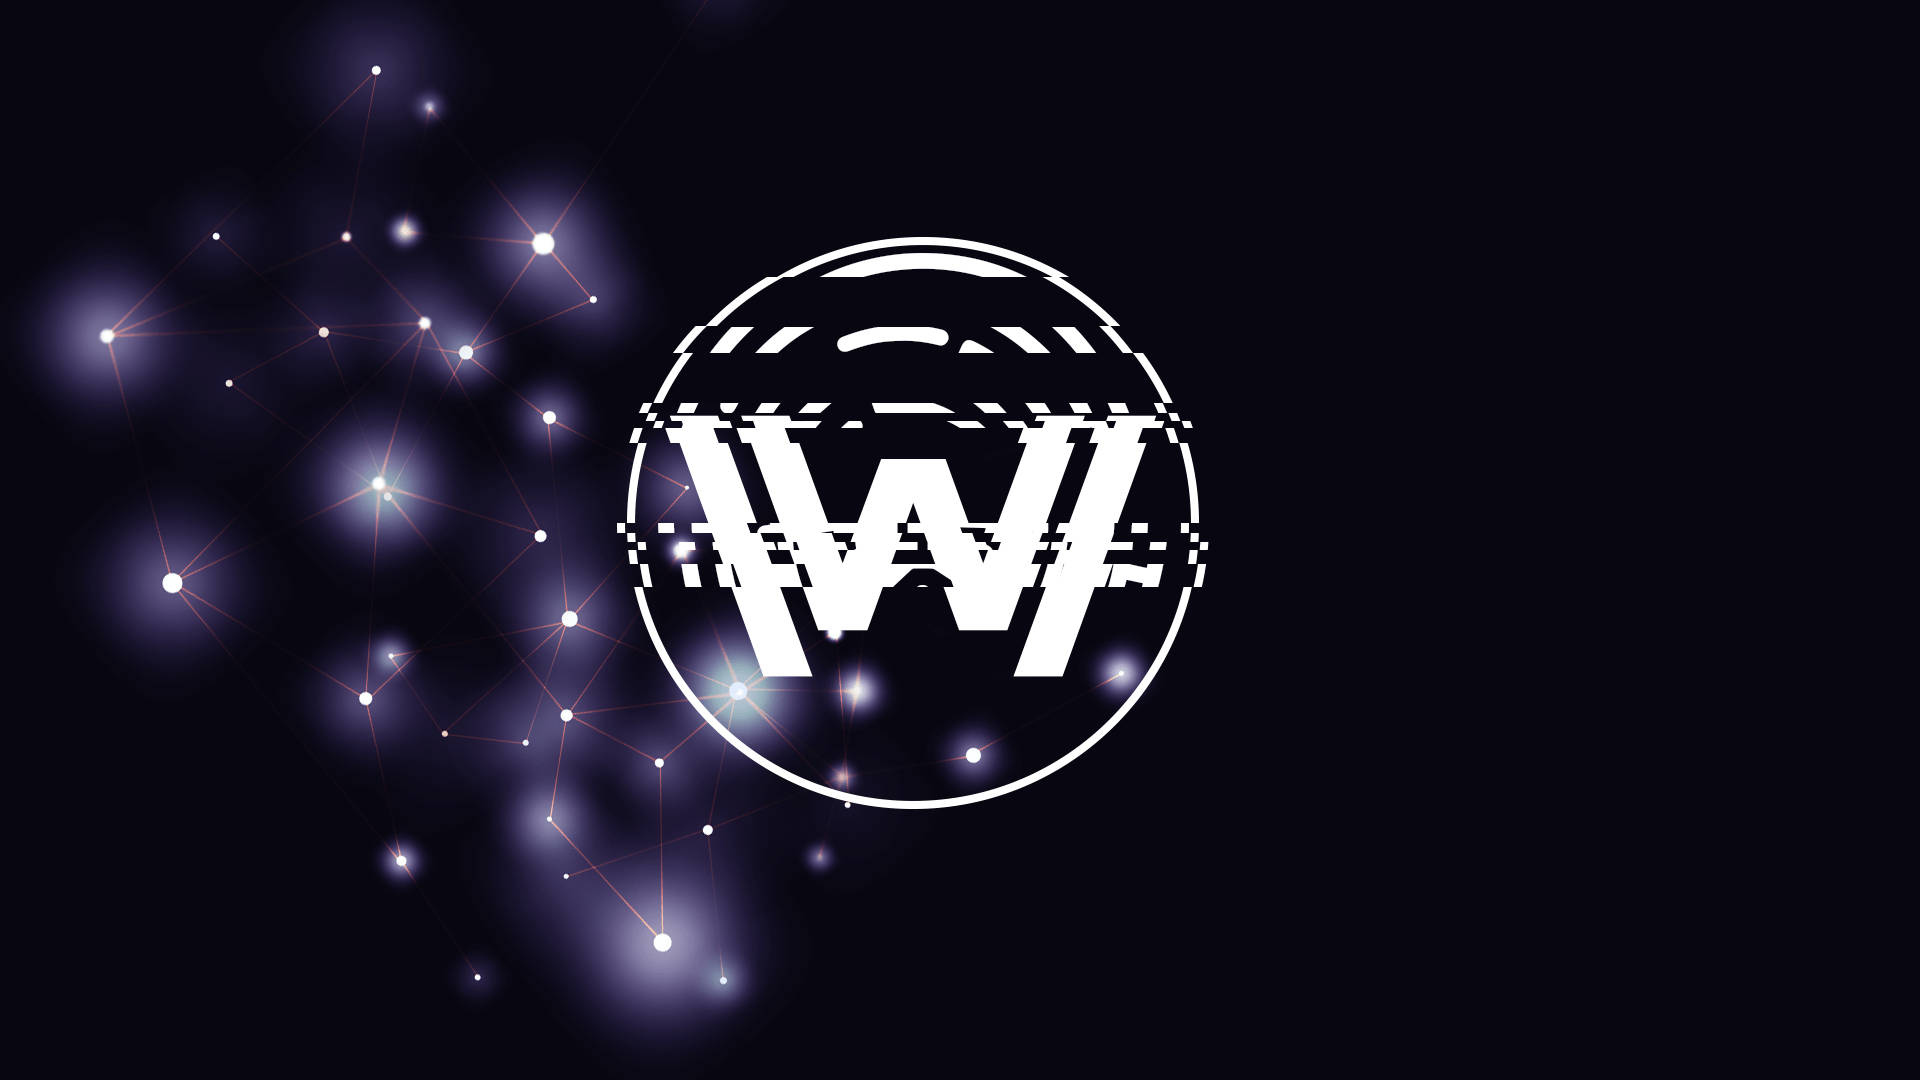 Logotipode Westworld Con Constelación De Estrellas Fondo de pantalla